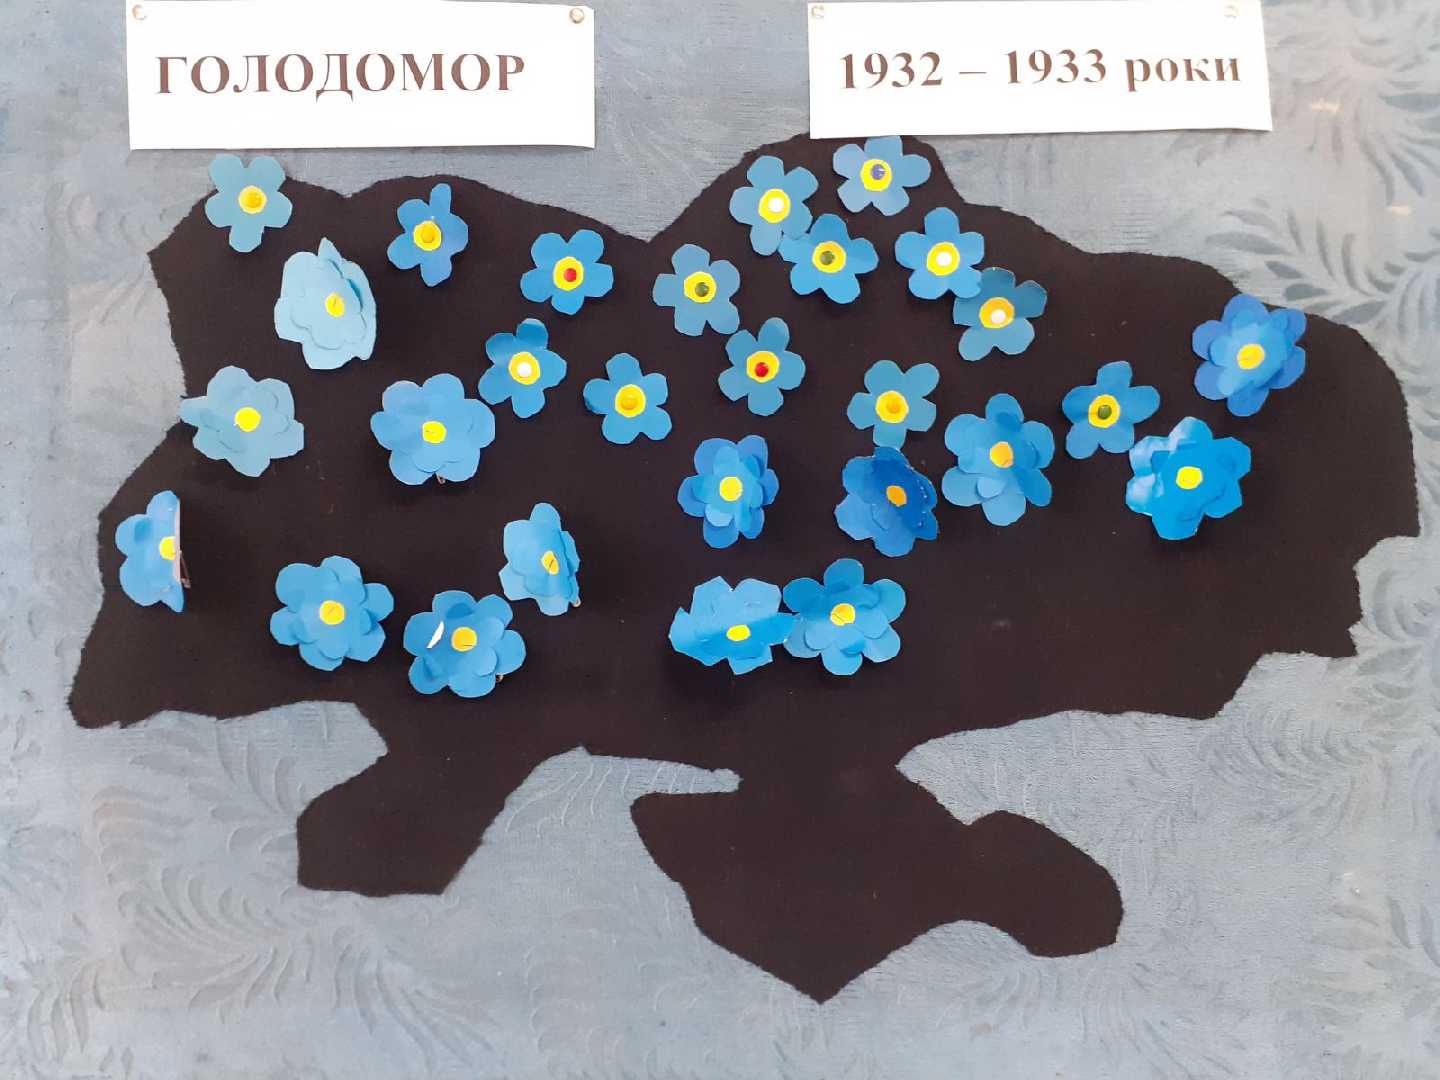 Голодомор 1932-1933 рр. - геноцид українського народу,  про який  не маємо  права забути. Незабудками  - символом пам'яті  - найменші учні школи вшанували  невинно  убієнних.